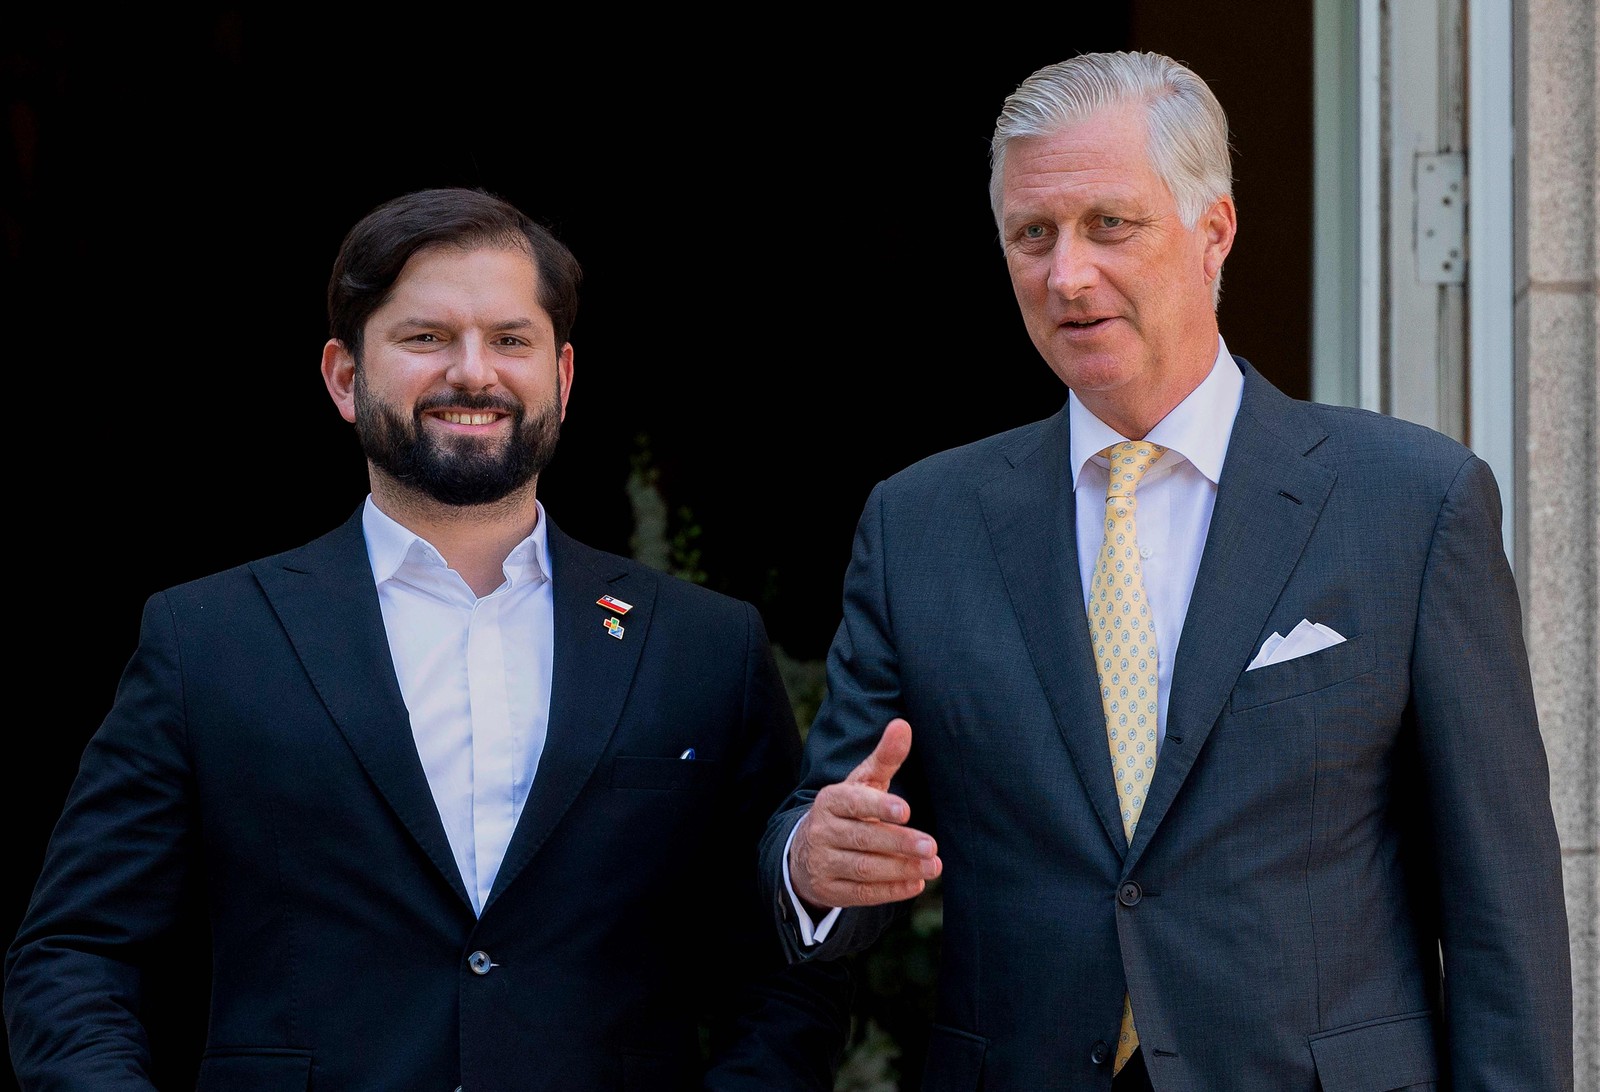  O presidente do Chile, Gabriel Boric (E), posa com o rei Philippe, Filip da Bélgica, antes de uma audiência no Palácio Real de Bruxelas  — Foto: BENOIT DOPPAGNE / Belga / AFP